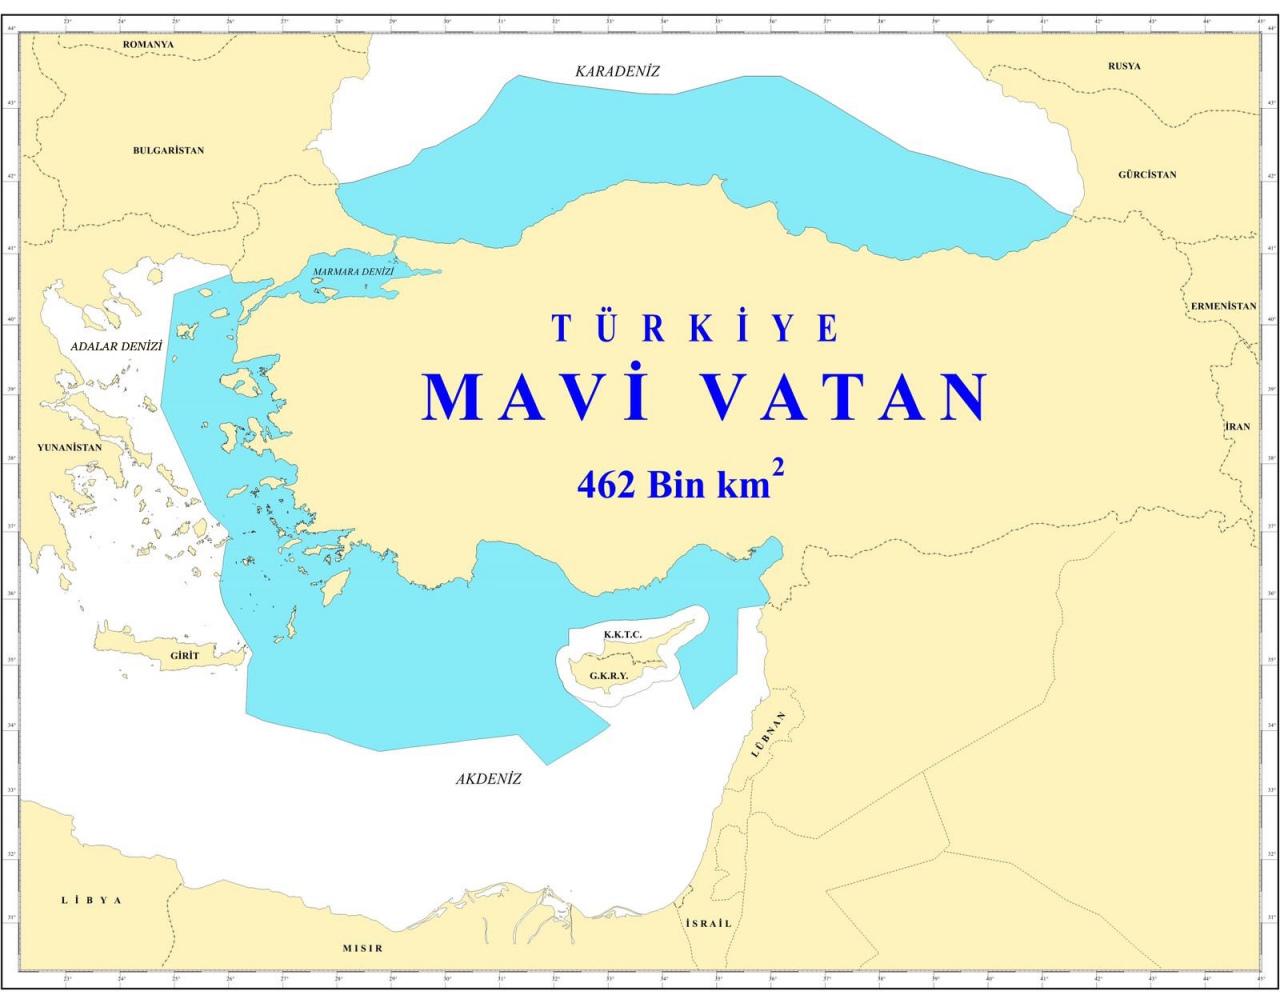 TÜRK Degs Başkanı Müstafi Tümamiral Cihat Yaycı'nın hazırladığı Mavi Vatan haritası